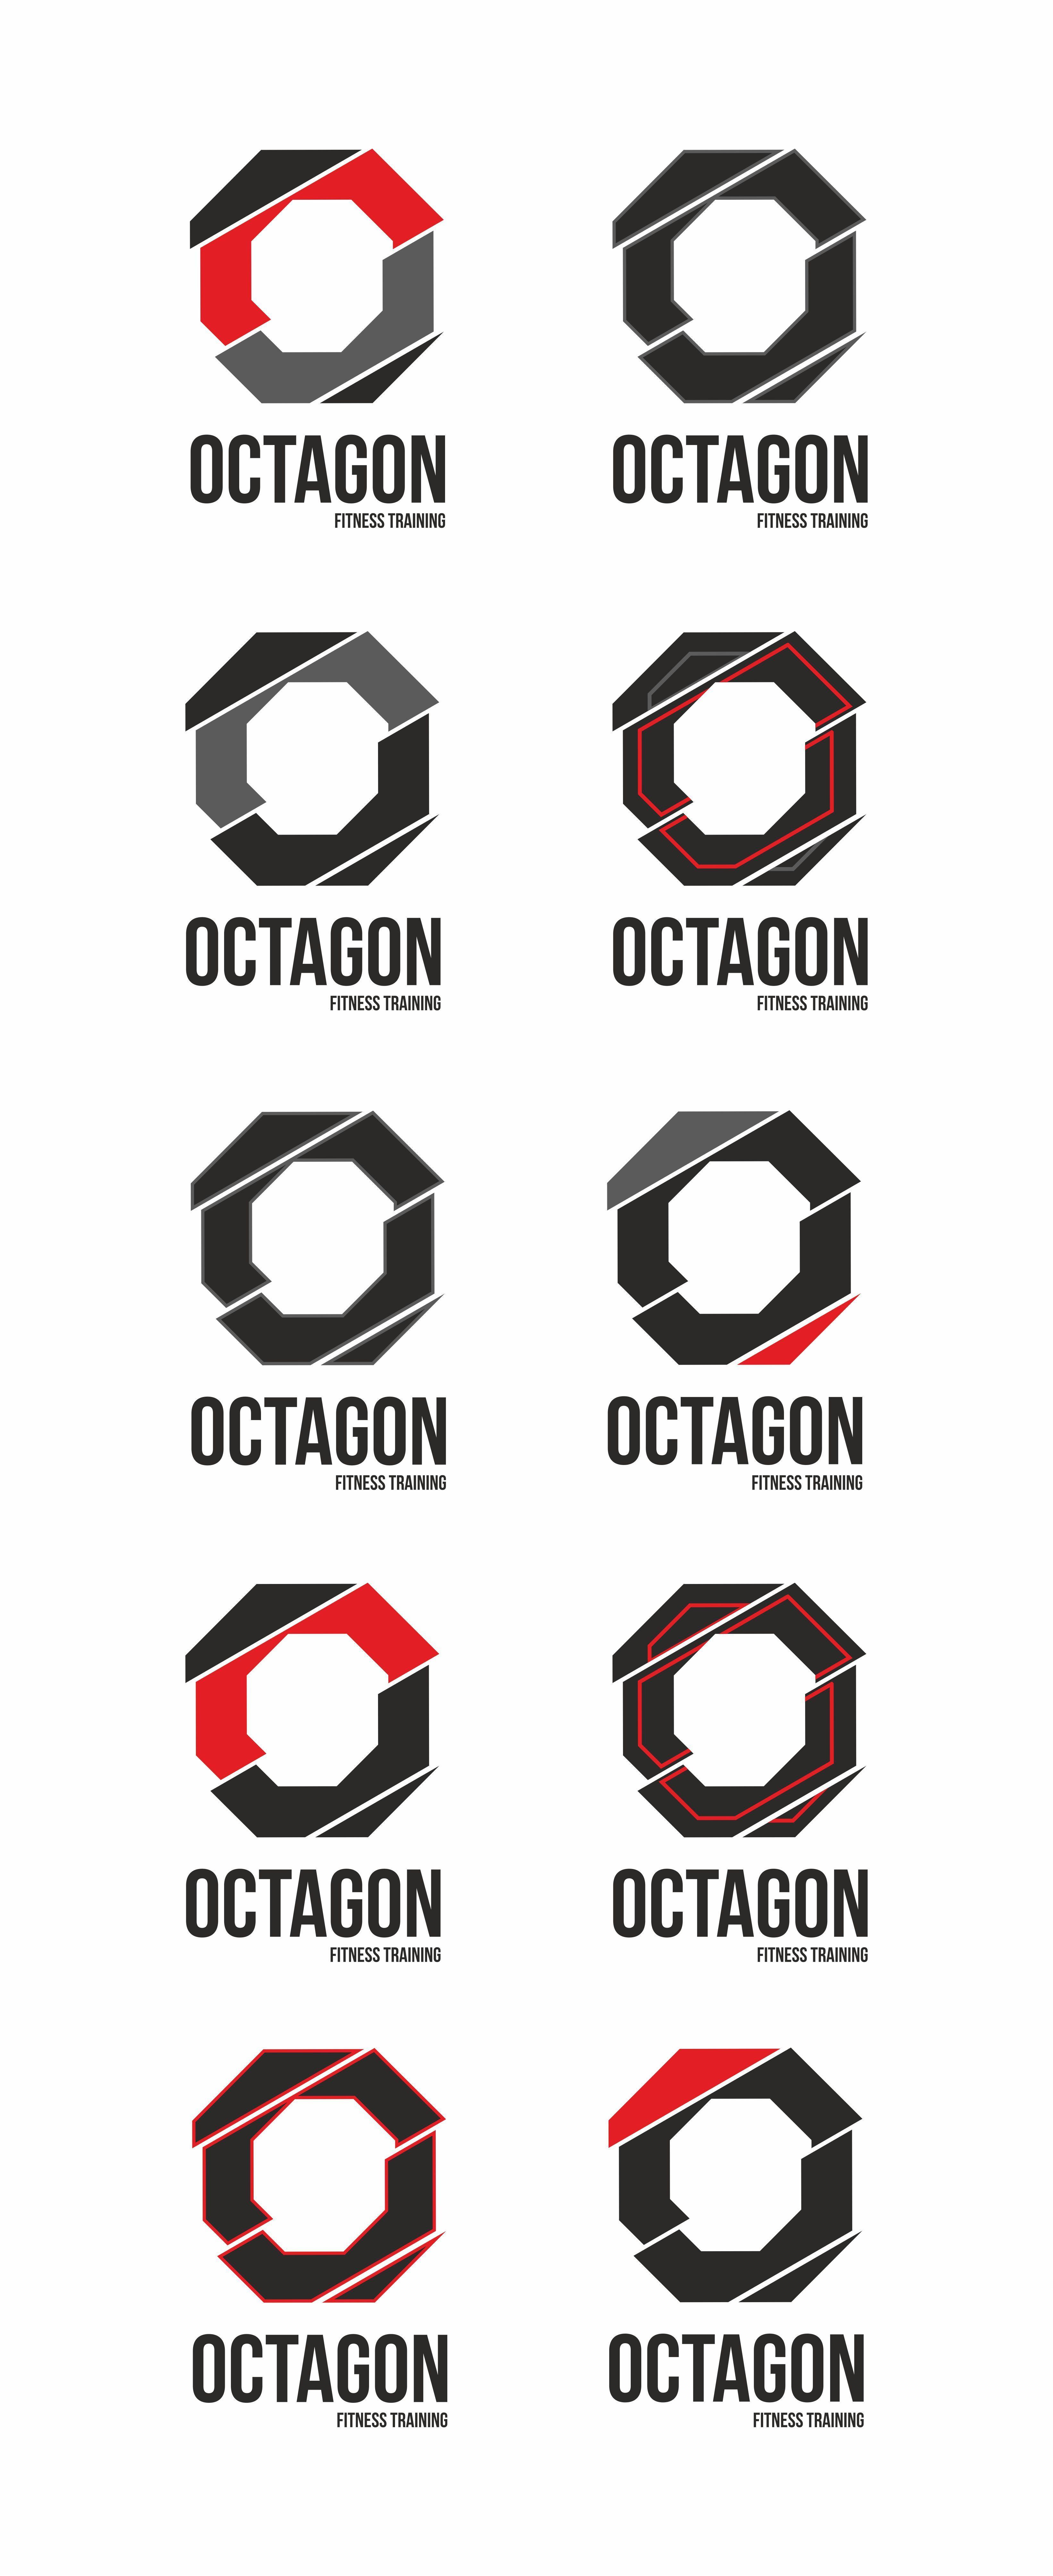 Octagon Company Logo - Desarrollo de Octagon #logo #branding #design #identity #typo ...